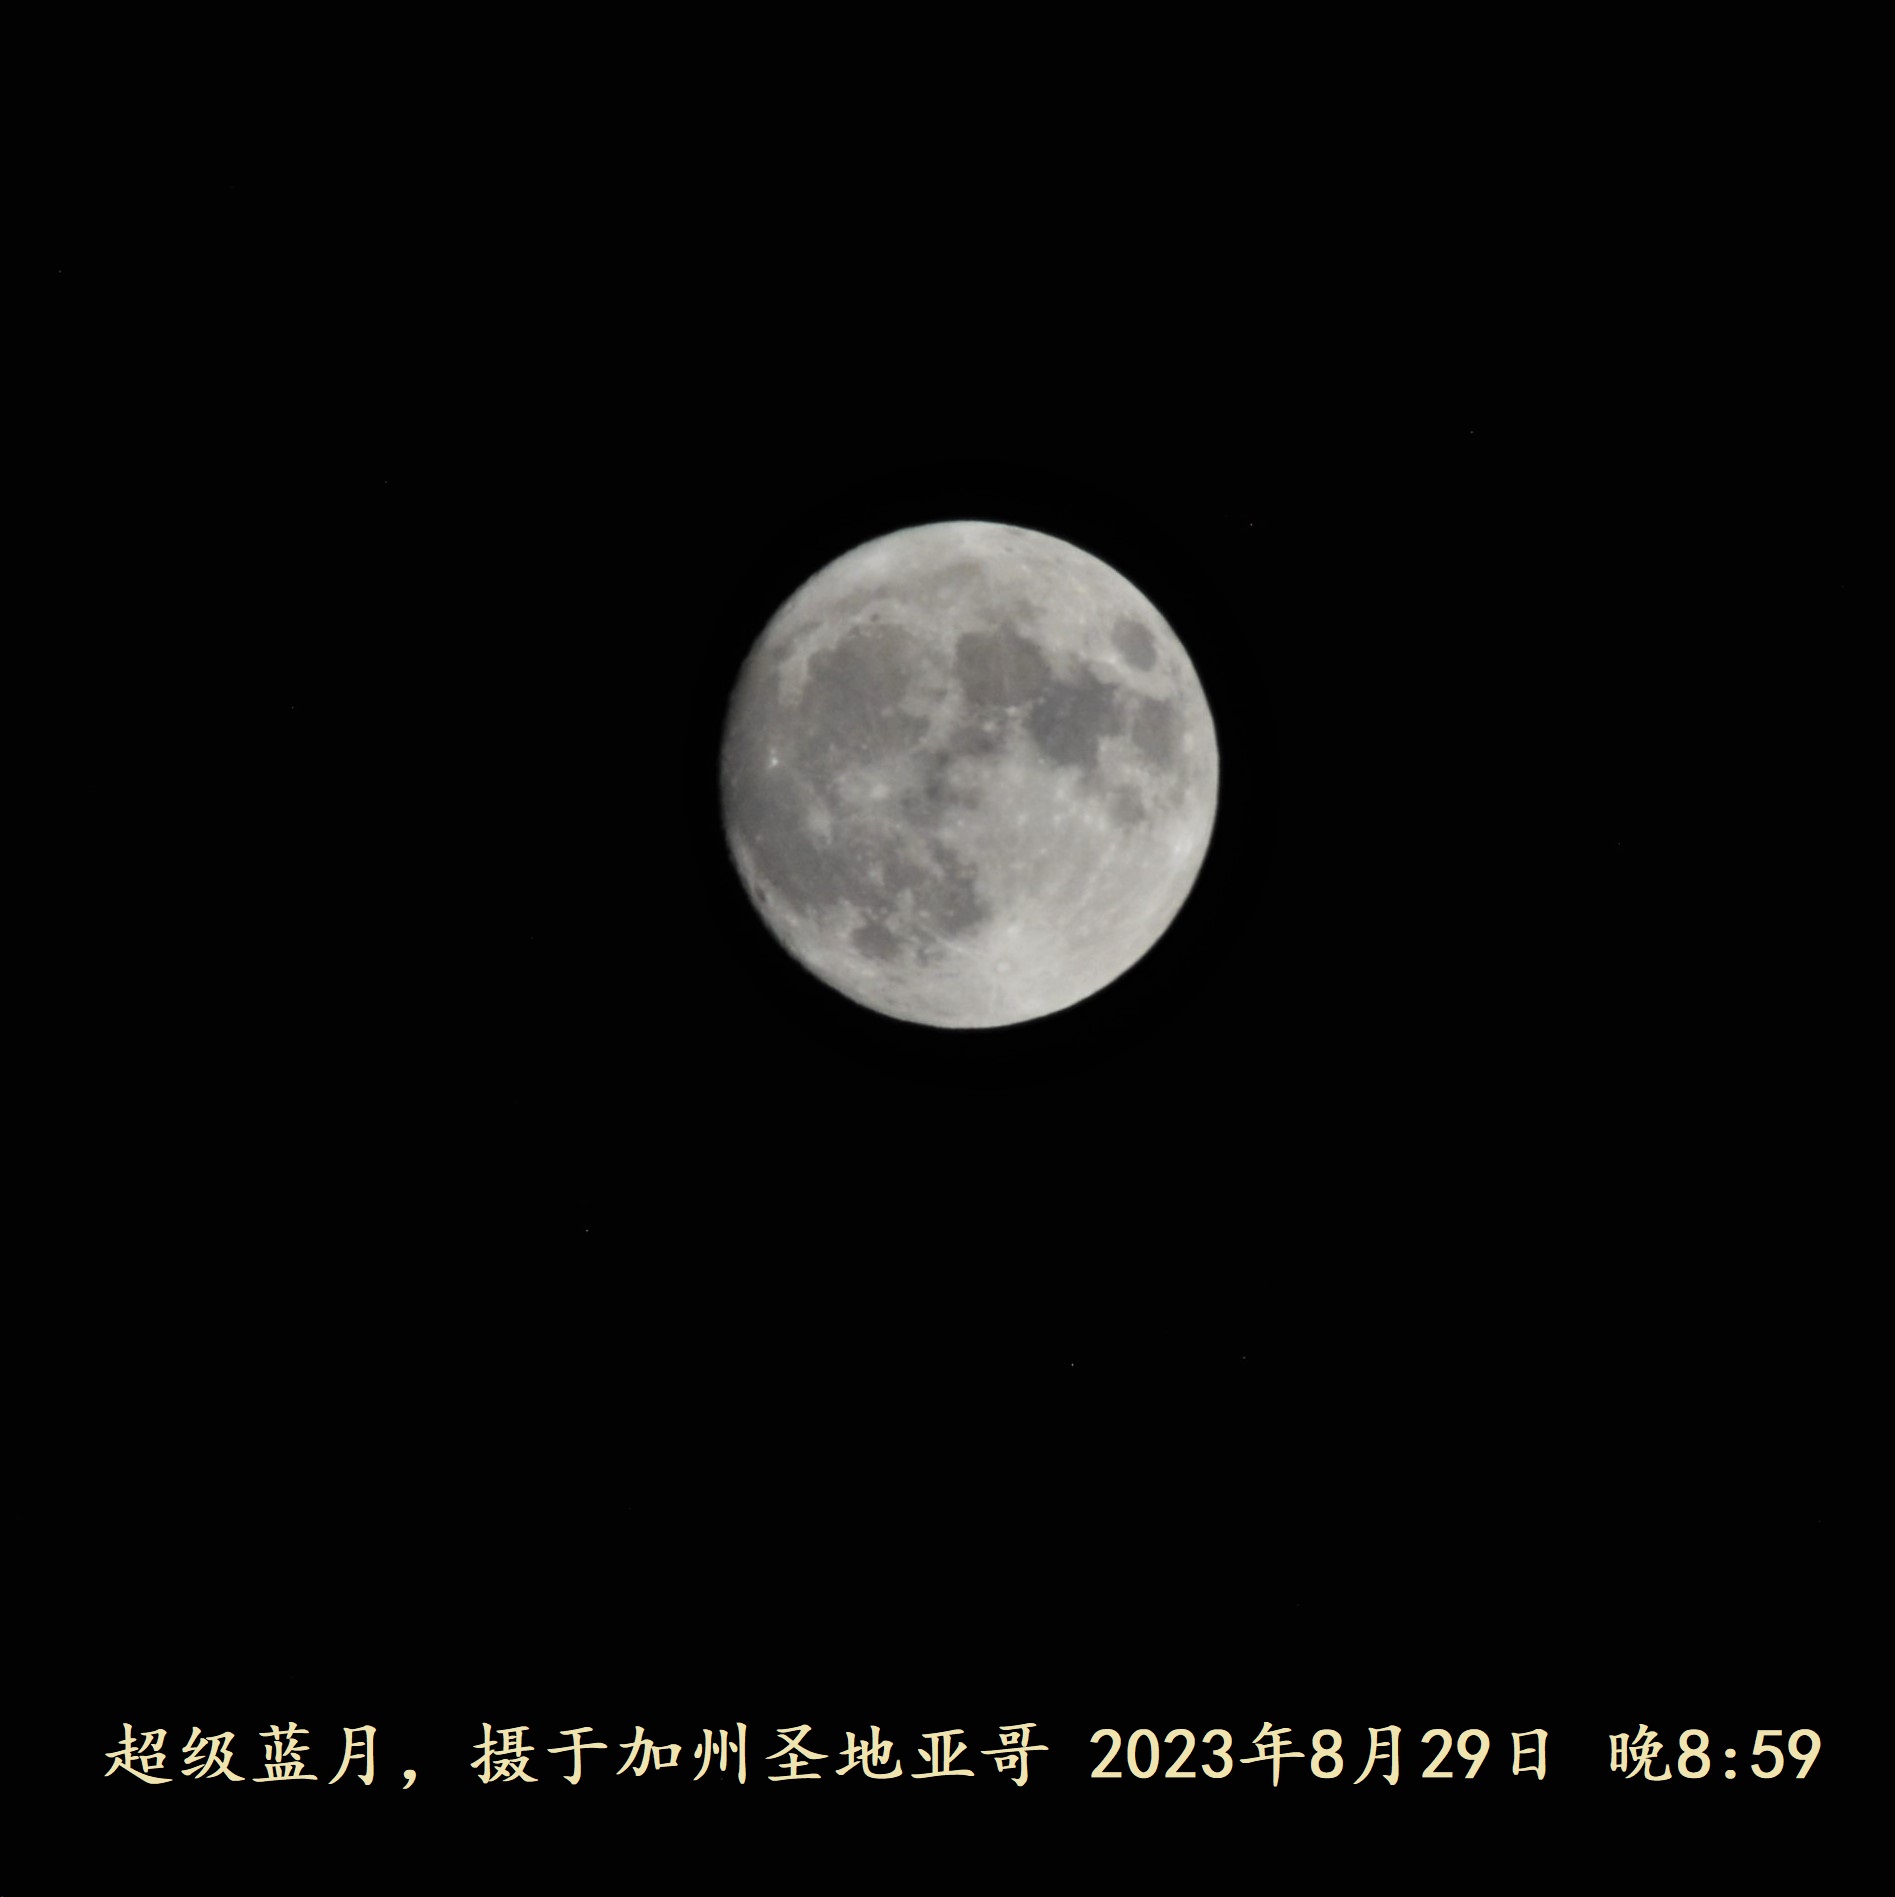 2023 08 29 Super Blue Moon P1 2